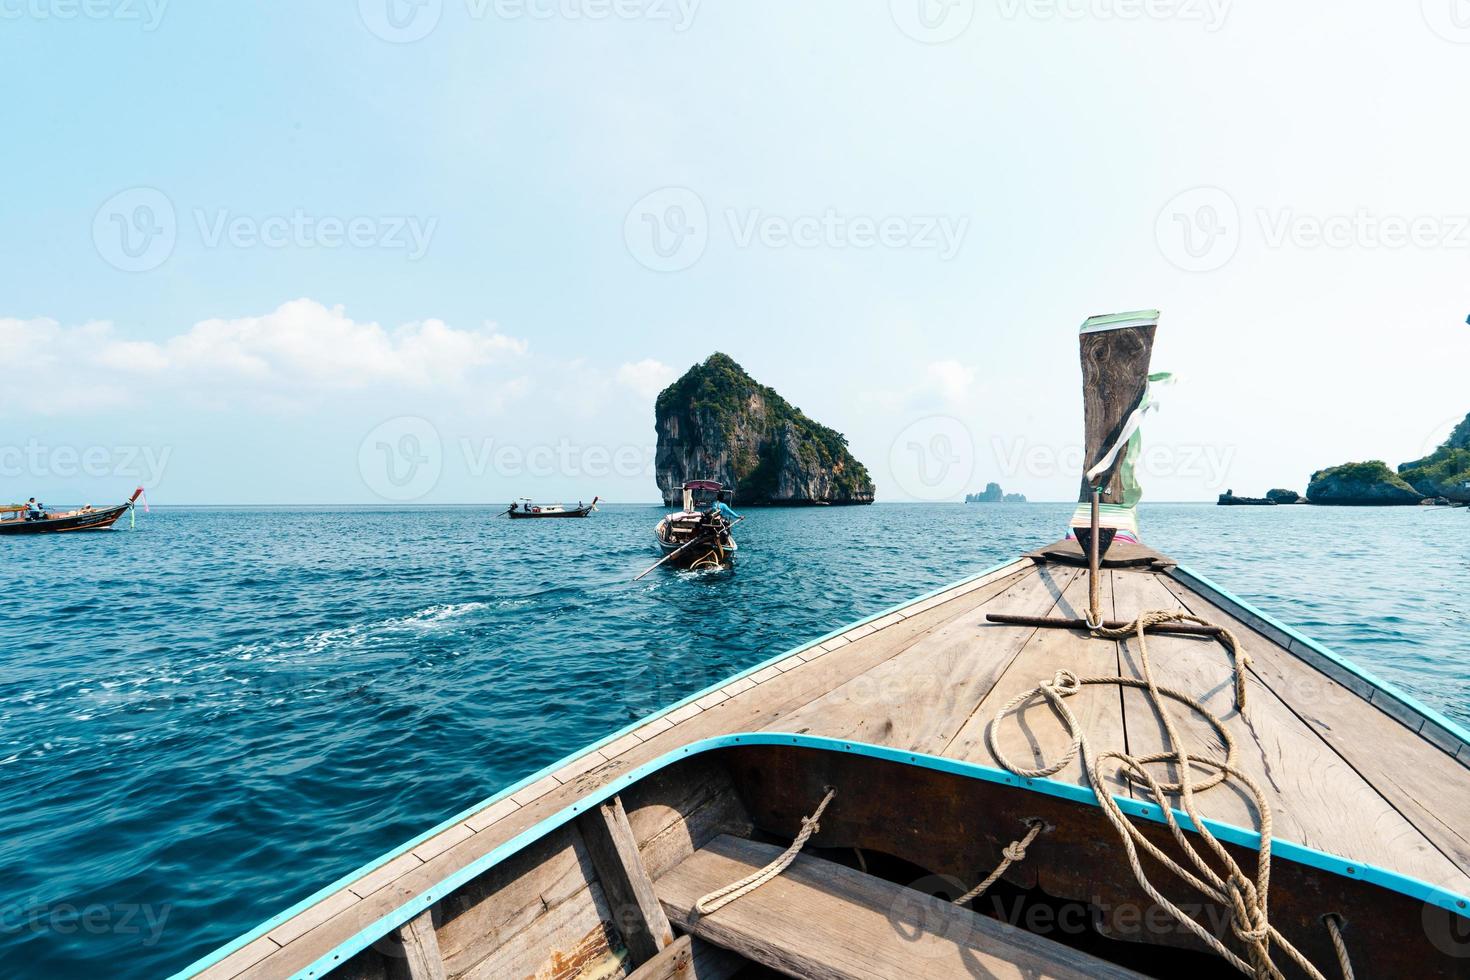 båtturer på hav och öar,resa på en långstjärtsbåt foto